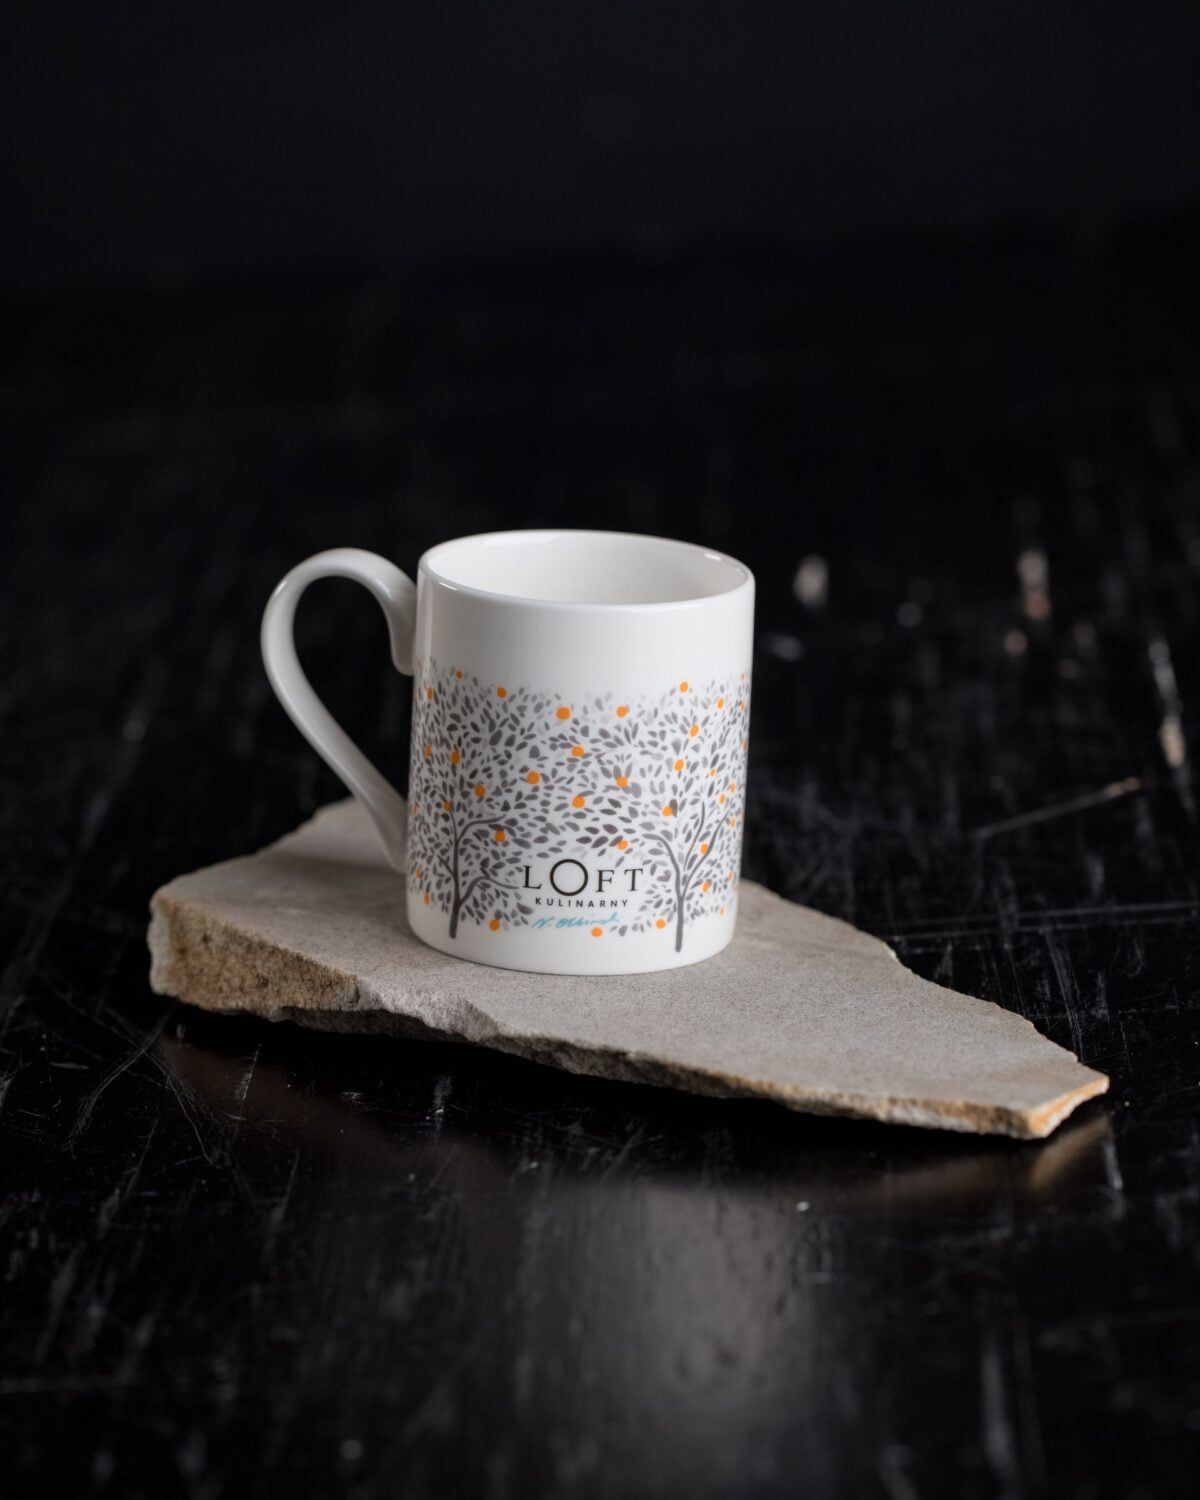 Kubek porcelanowy projektu N.Olbiński kolekcji “Mój Mały Raj” Loft Kulinarny